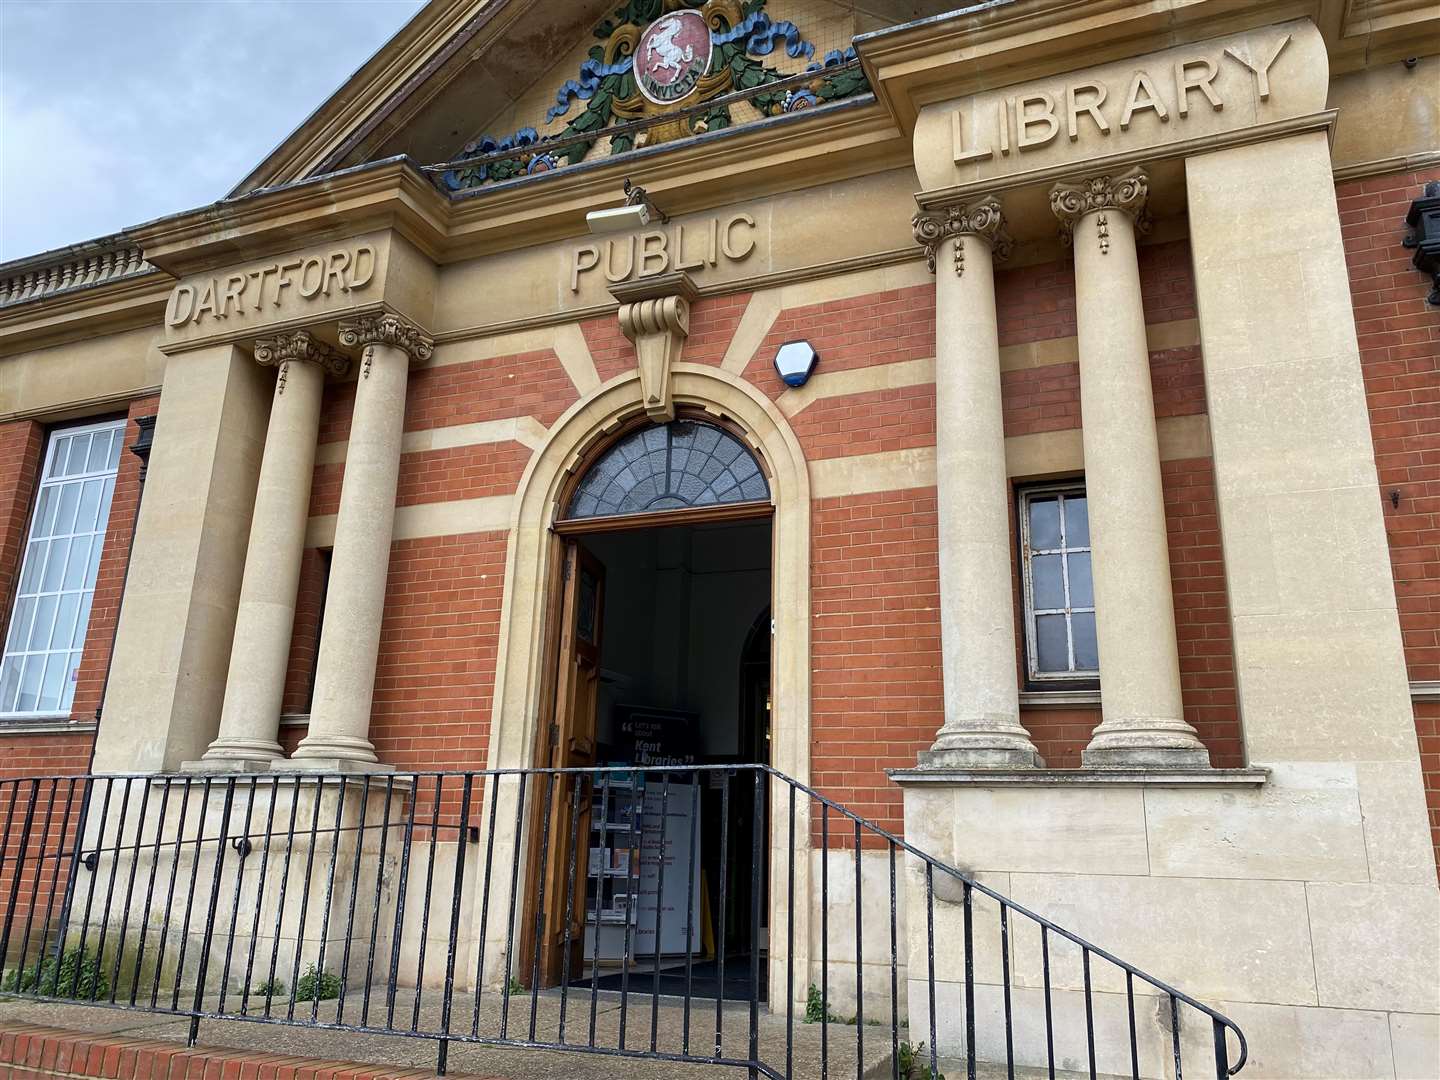 Dartford Library in Market Street, Dartford. Picture: Cara Simmonds